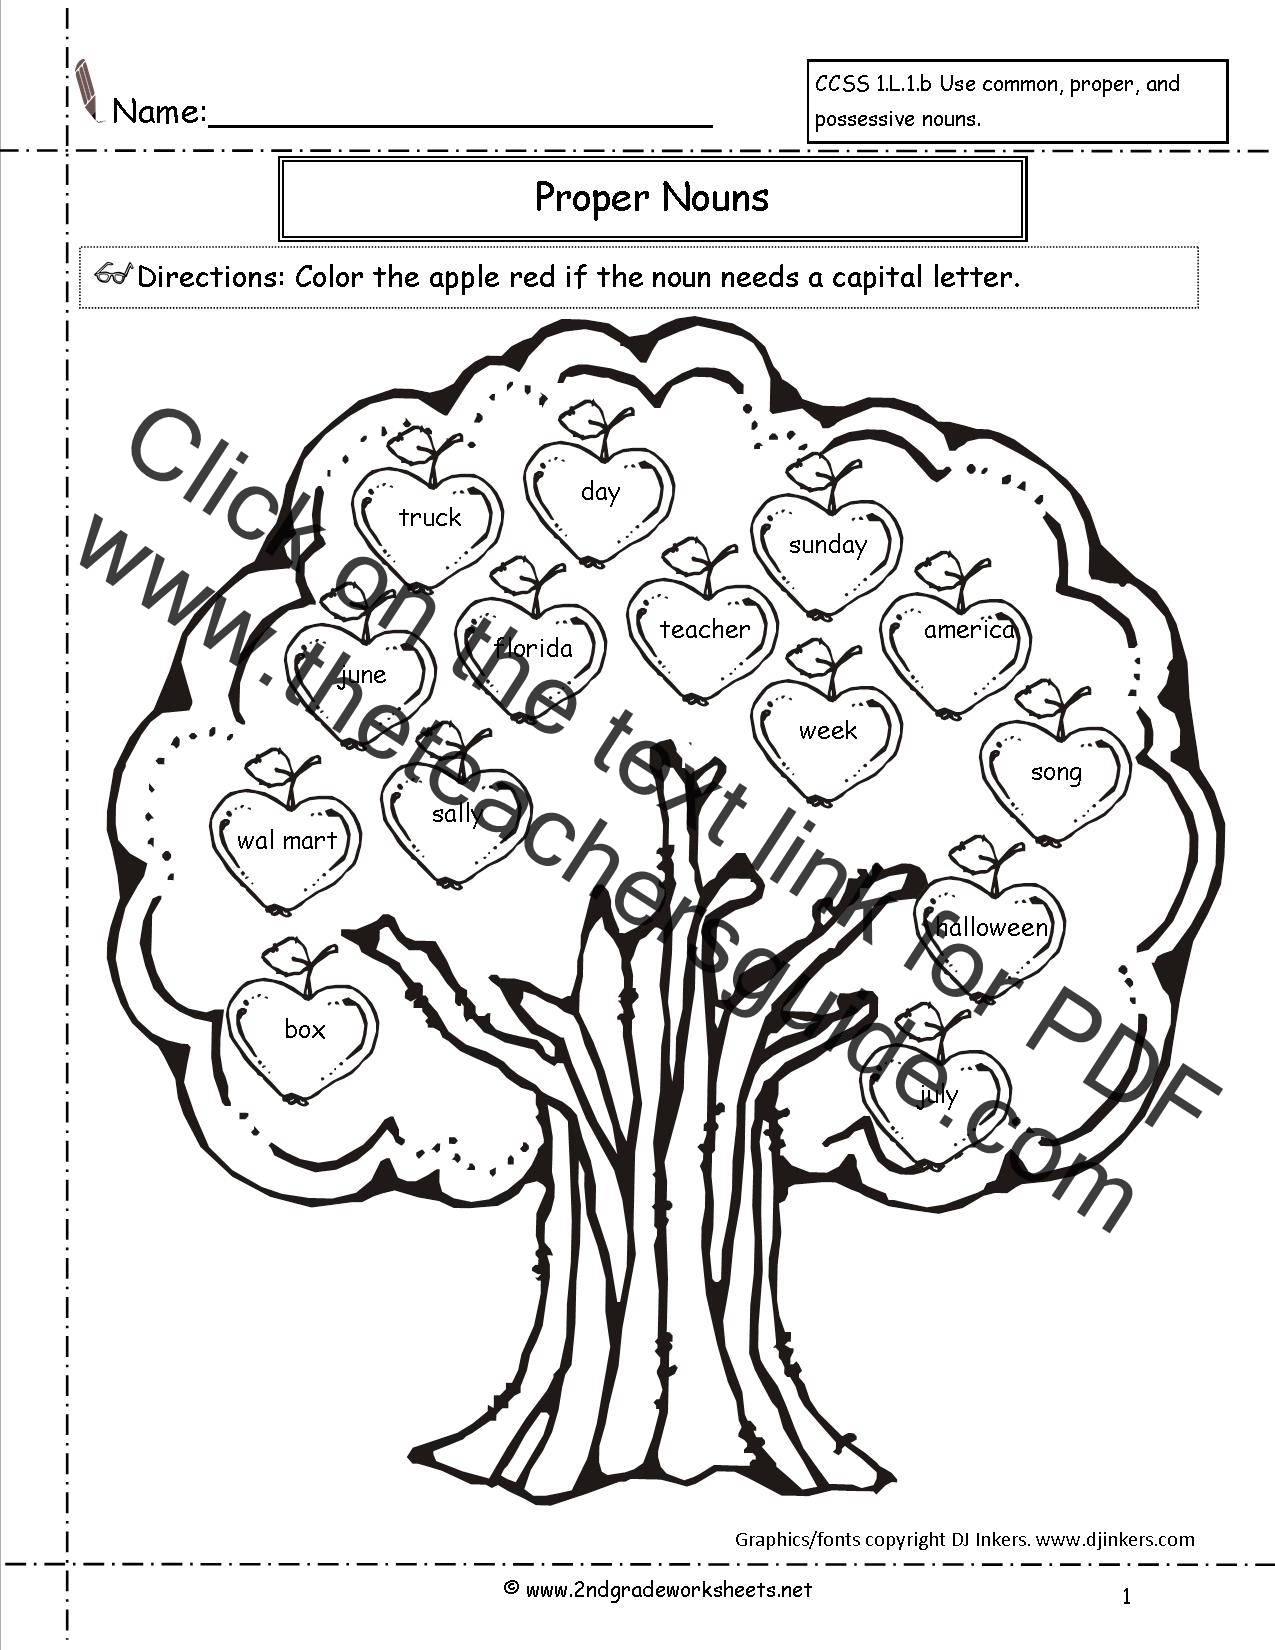 Nouns Worksheet Proper Nouns Worksheet Free Kindergarten Worksheets